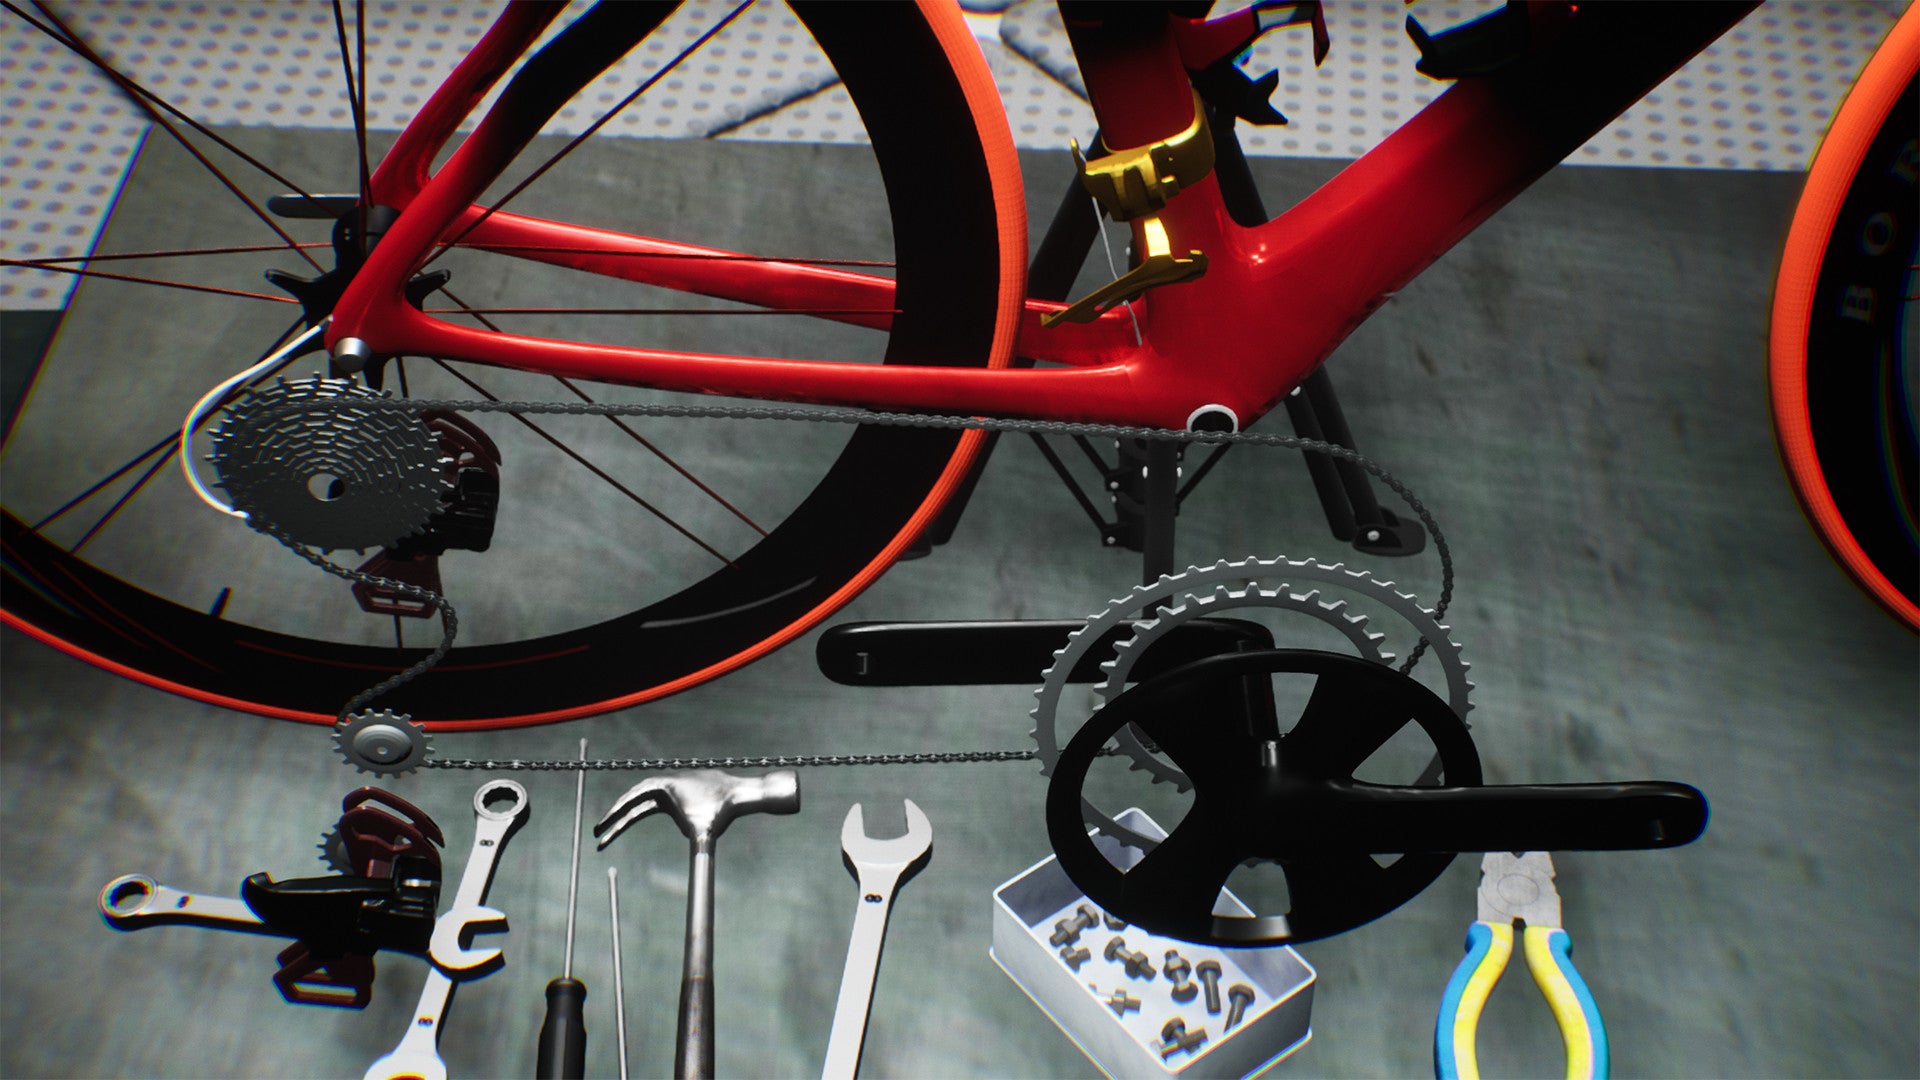 Fixing a bike in a Bicycle Mechanic Simulator screenshot.